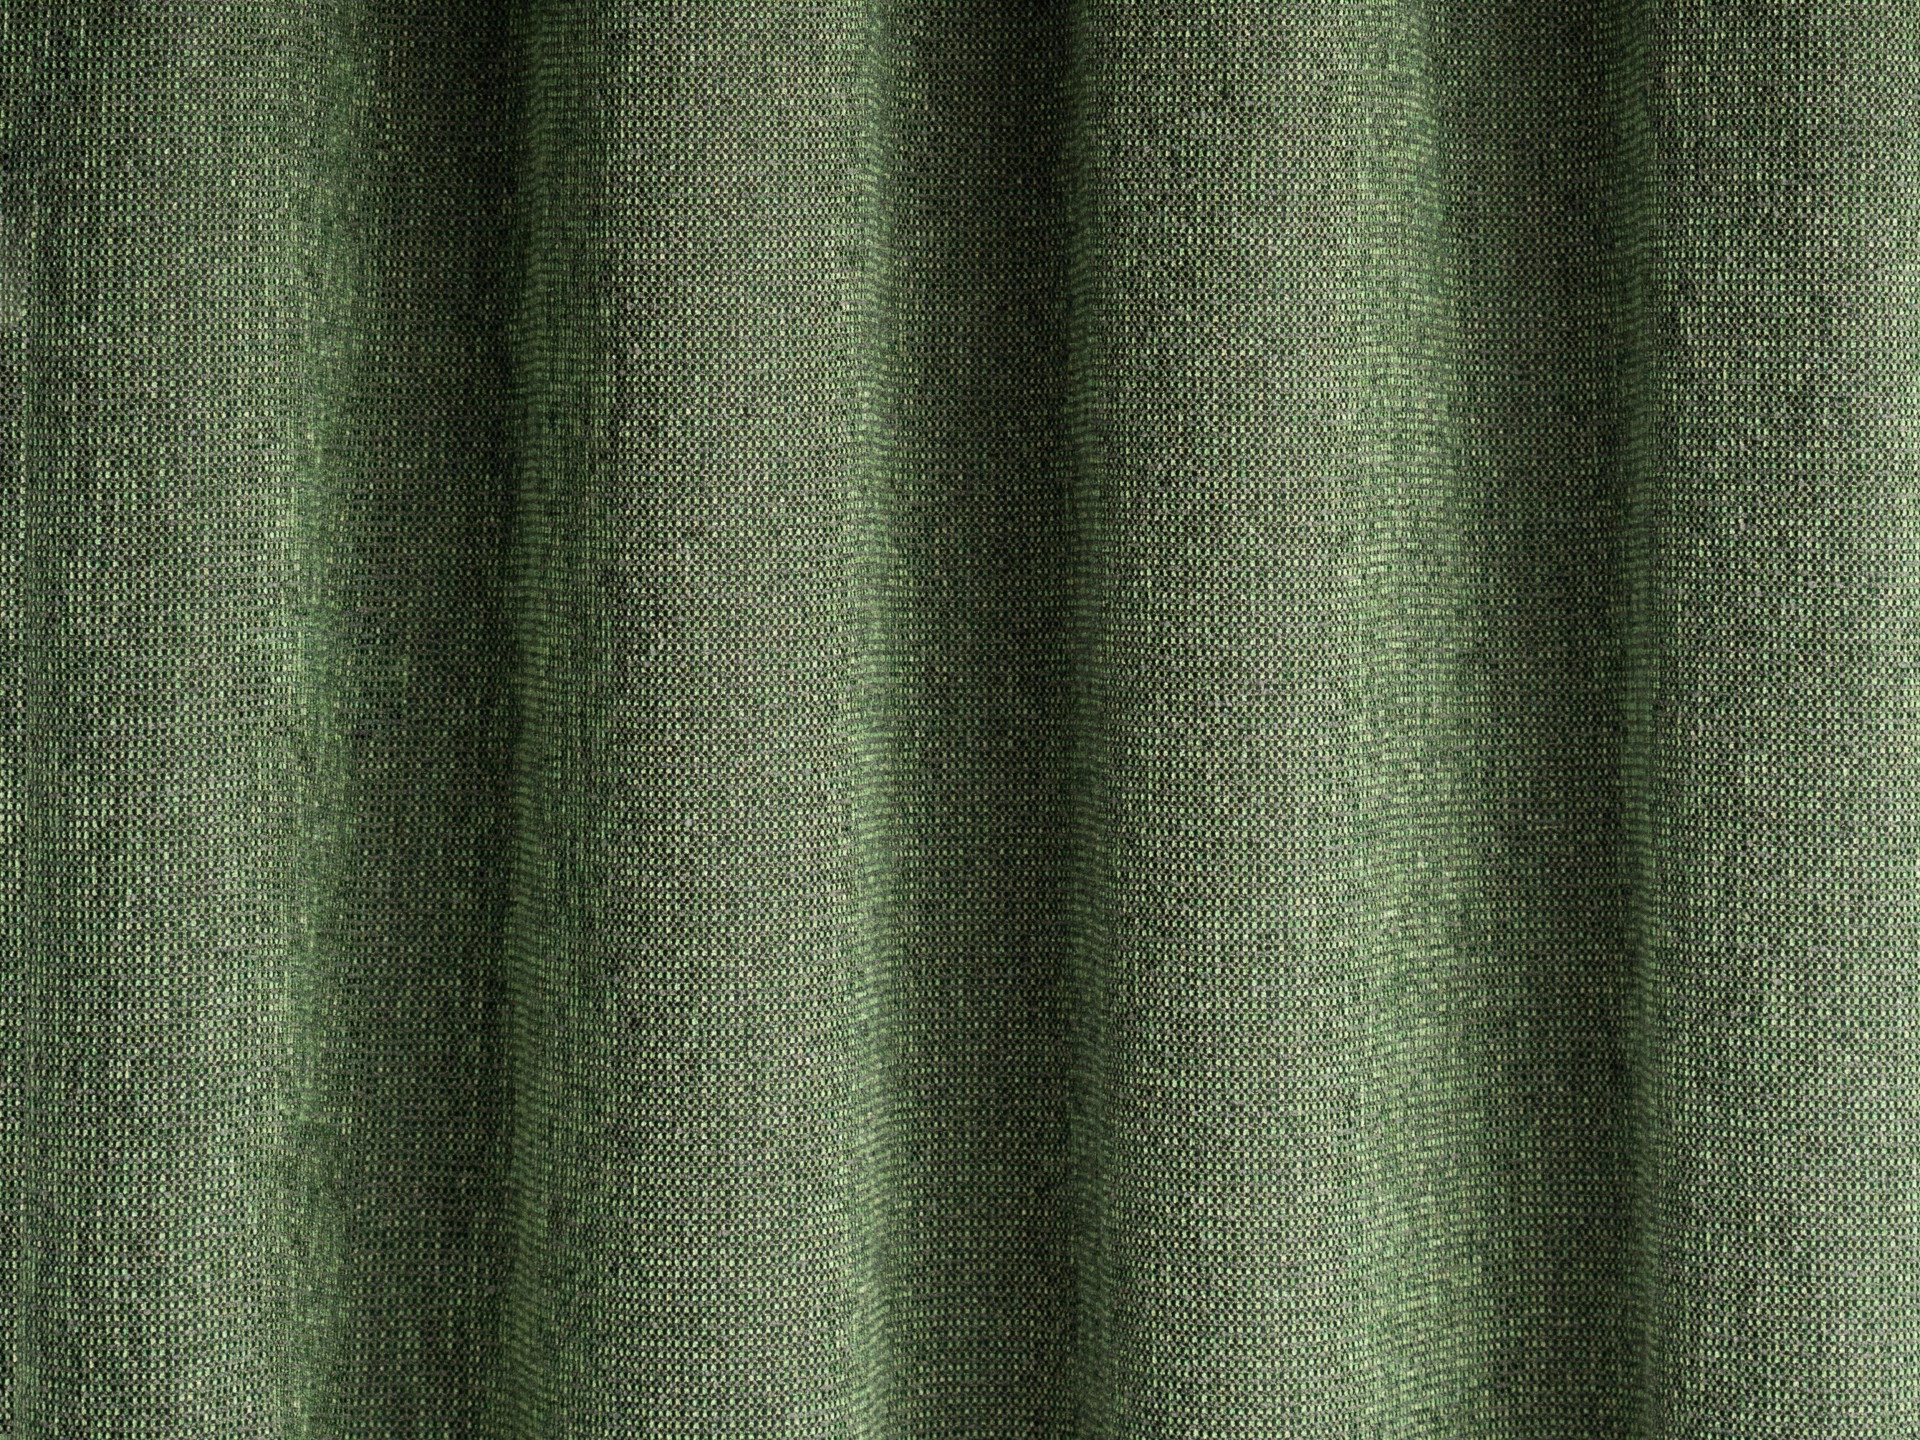 Design függöny textil zöld színben apró mintázattal